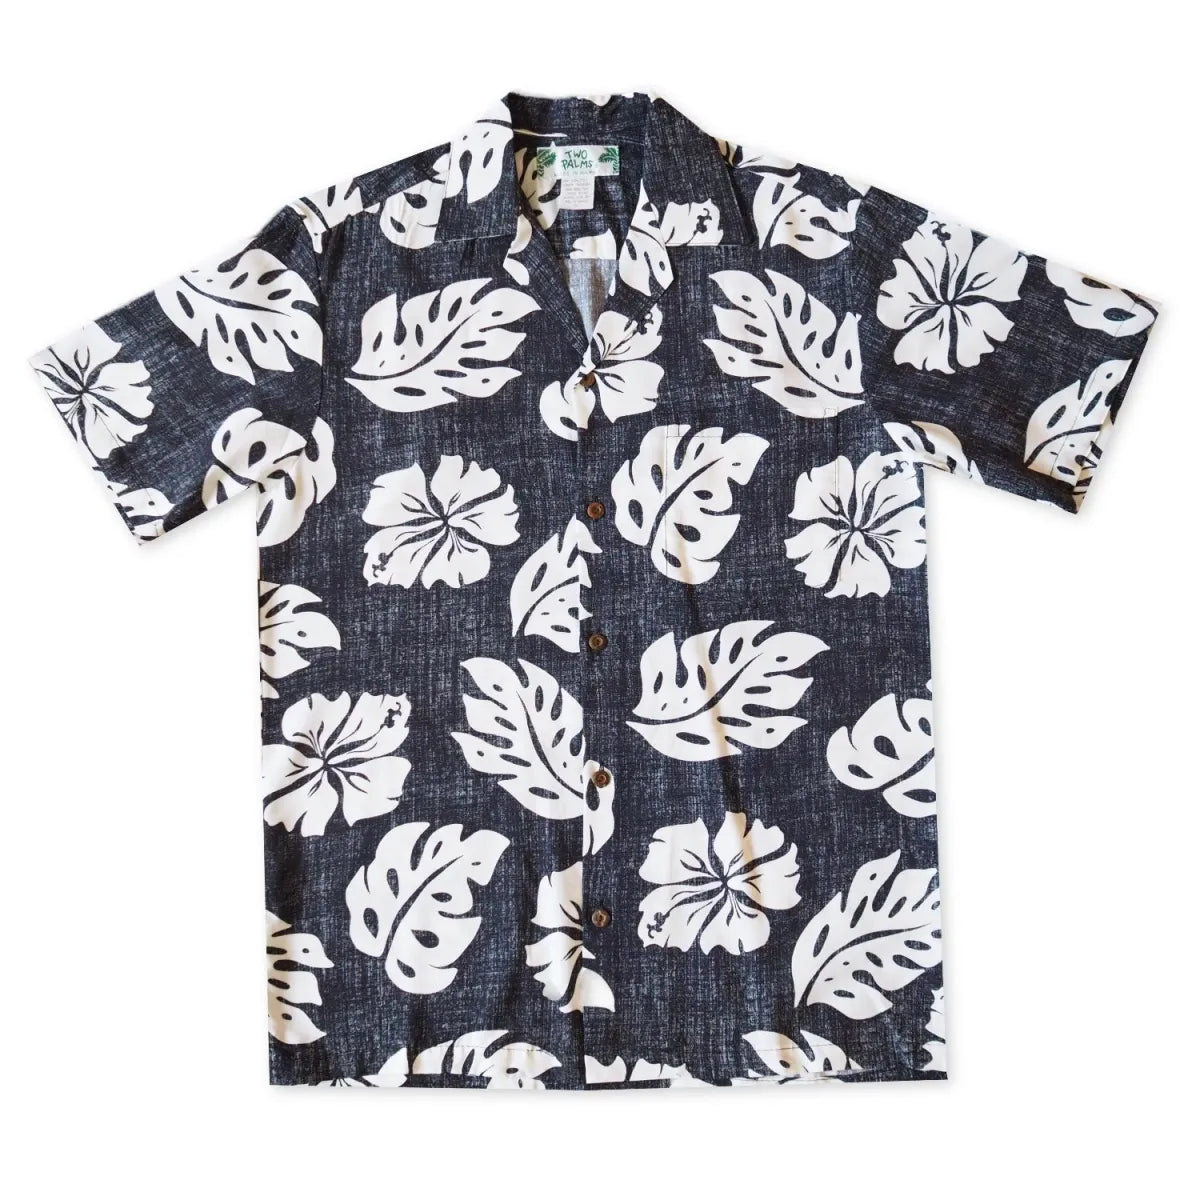 Tradewinds black hawaiian aloha rayon shirt